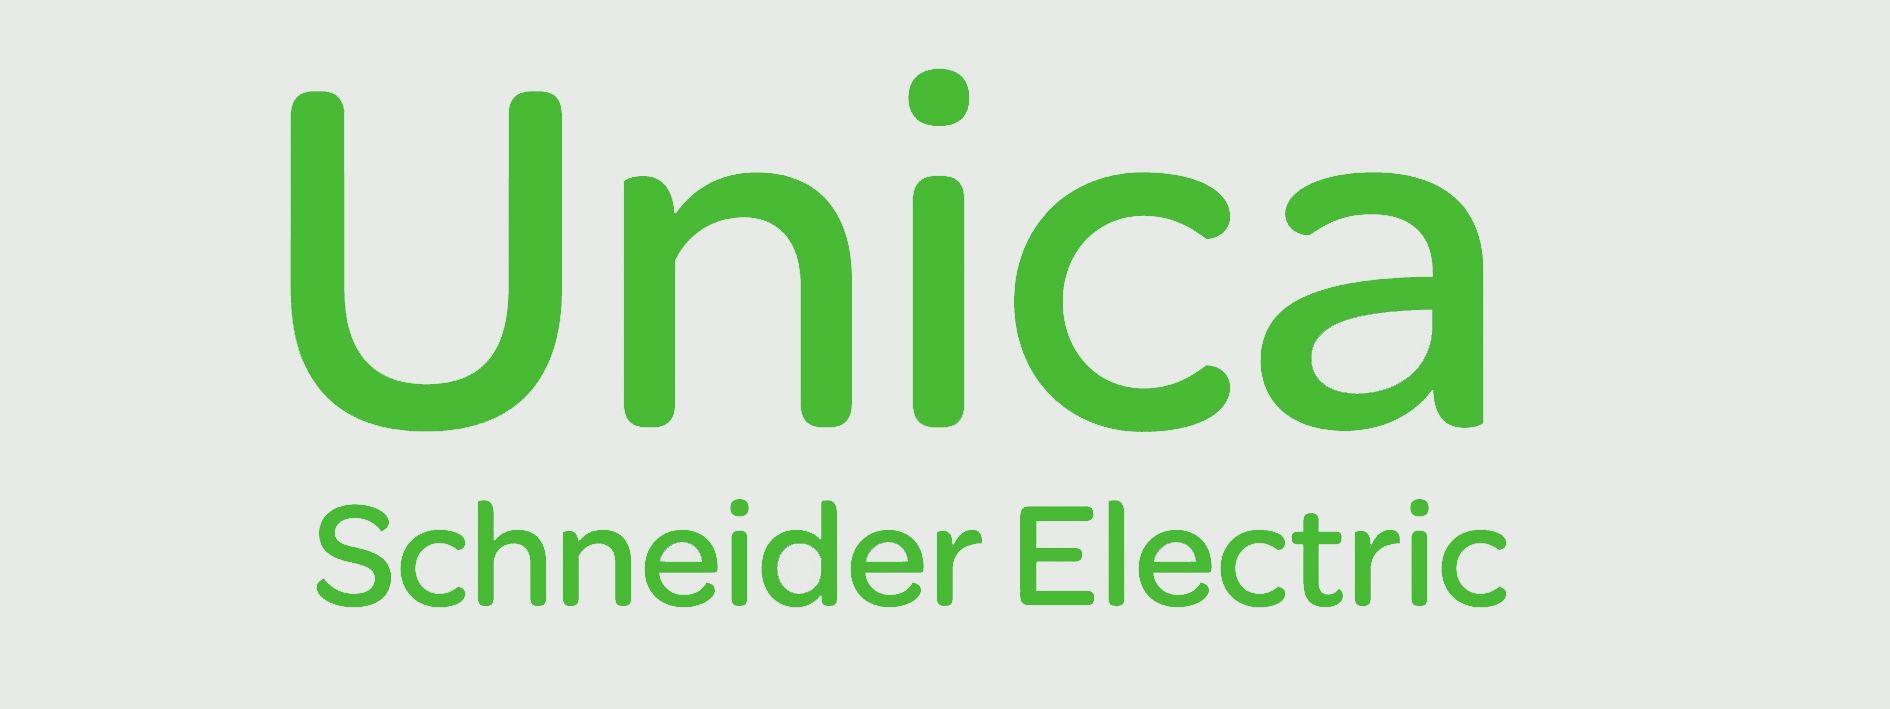 Schneider Electric Logo - Schneider Electric: Unica Schneider Electric